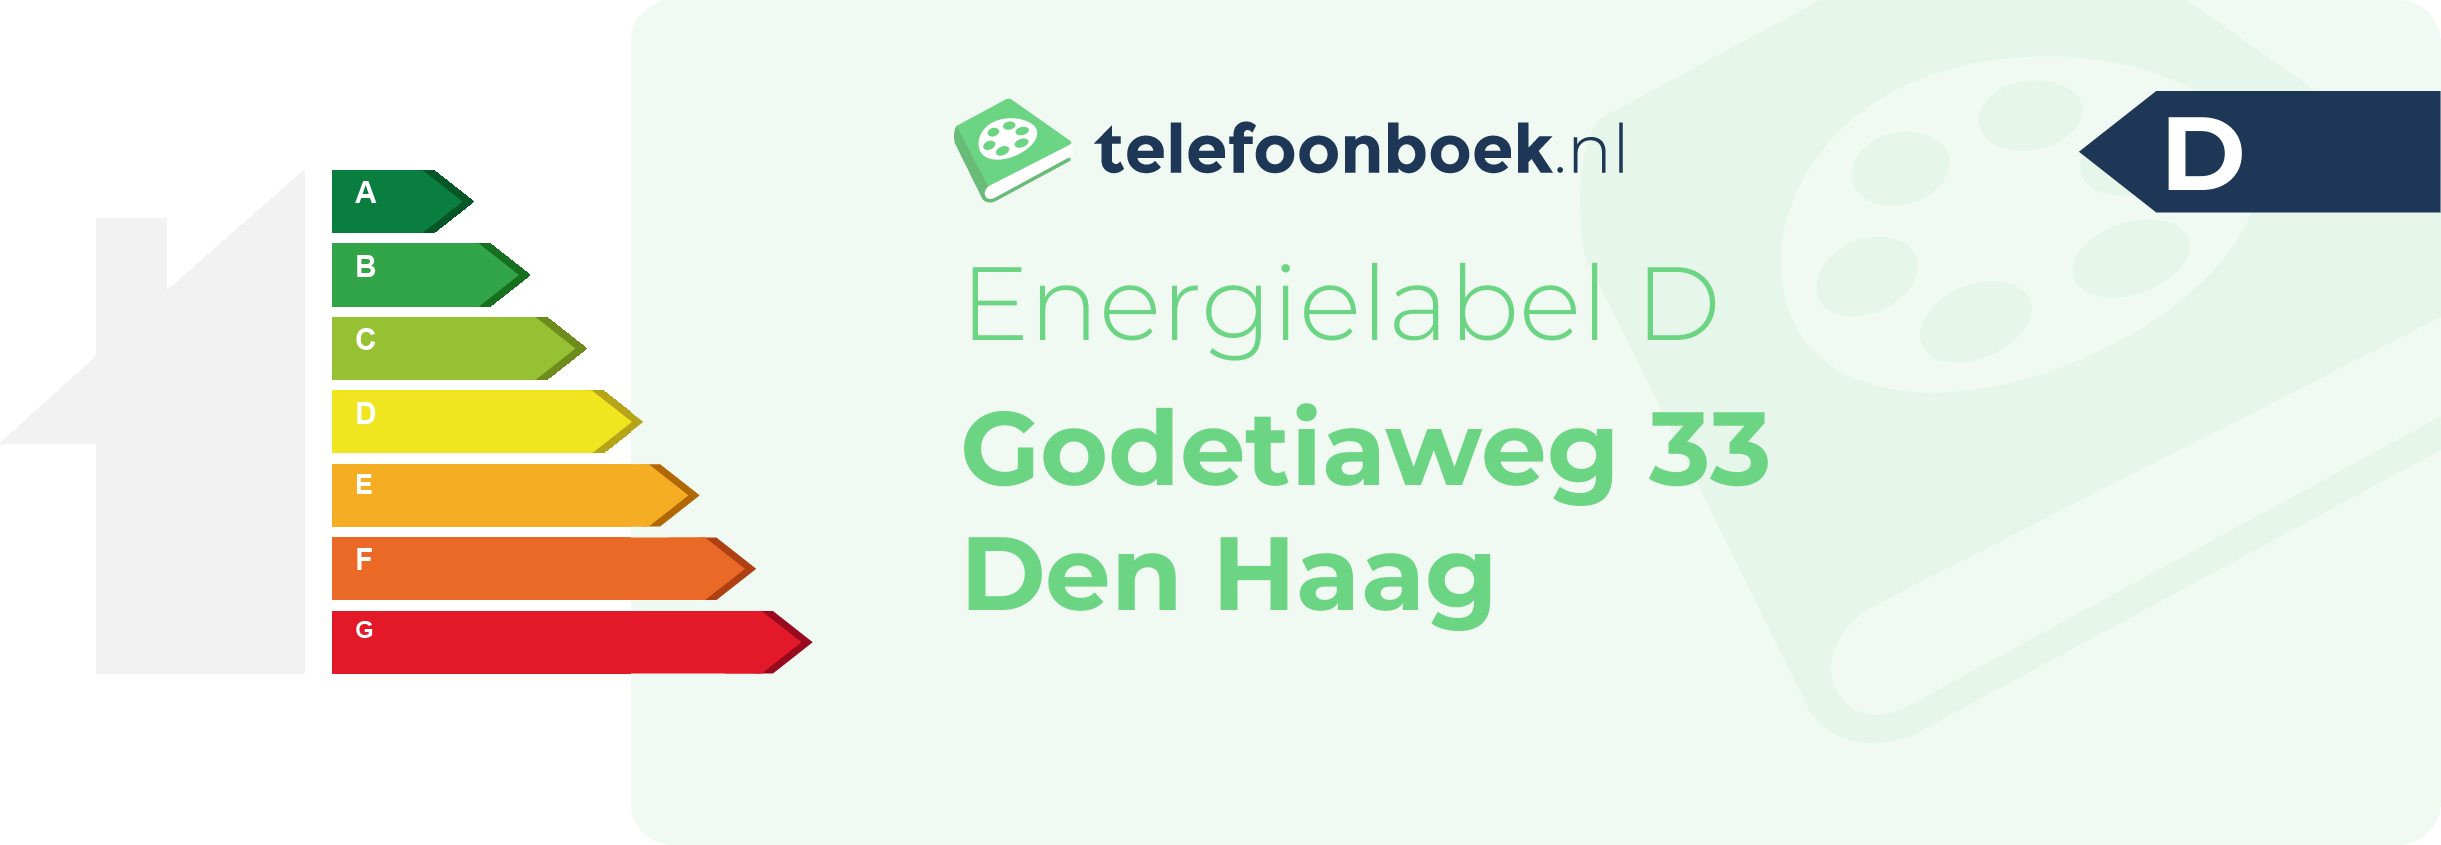 Energielabel Godetiaweg 33 Den Haag